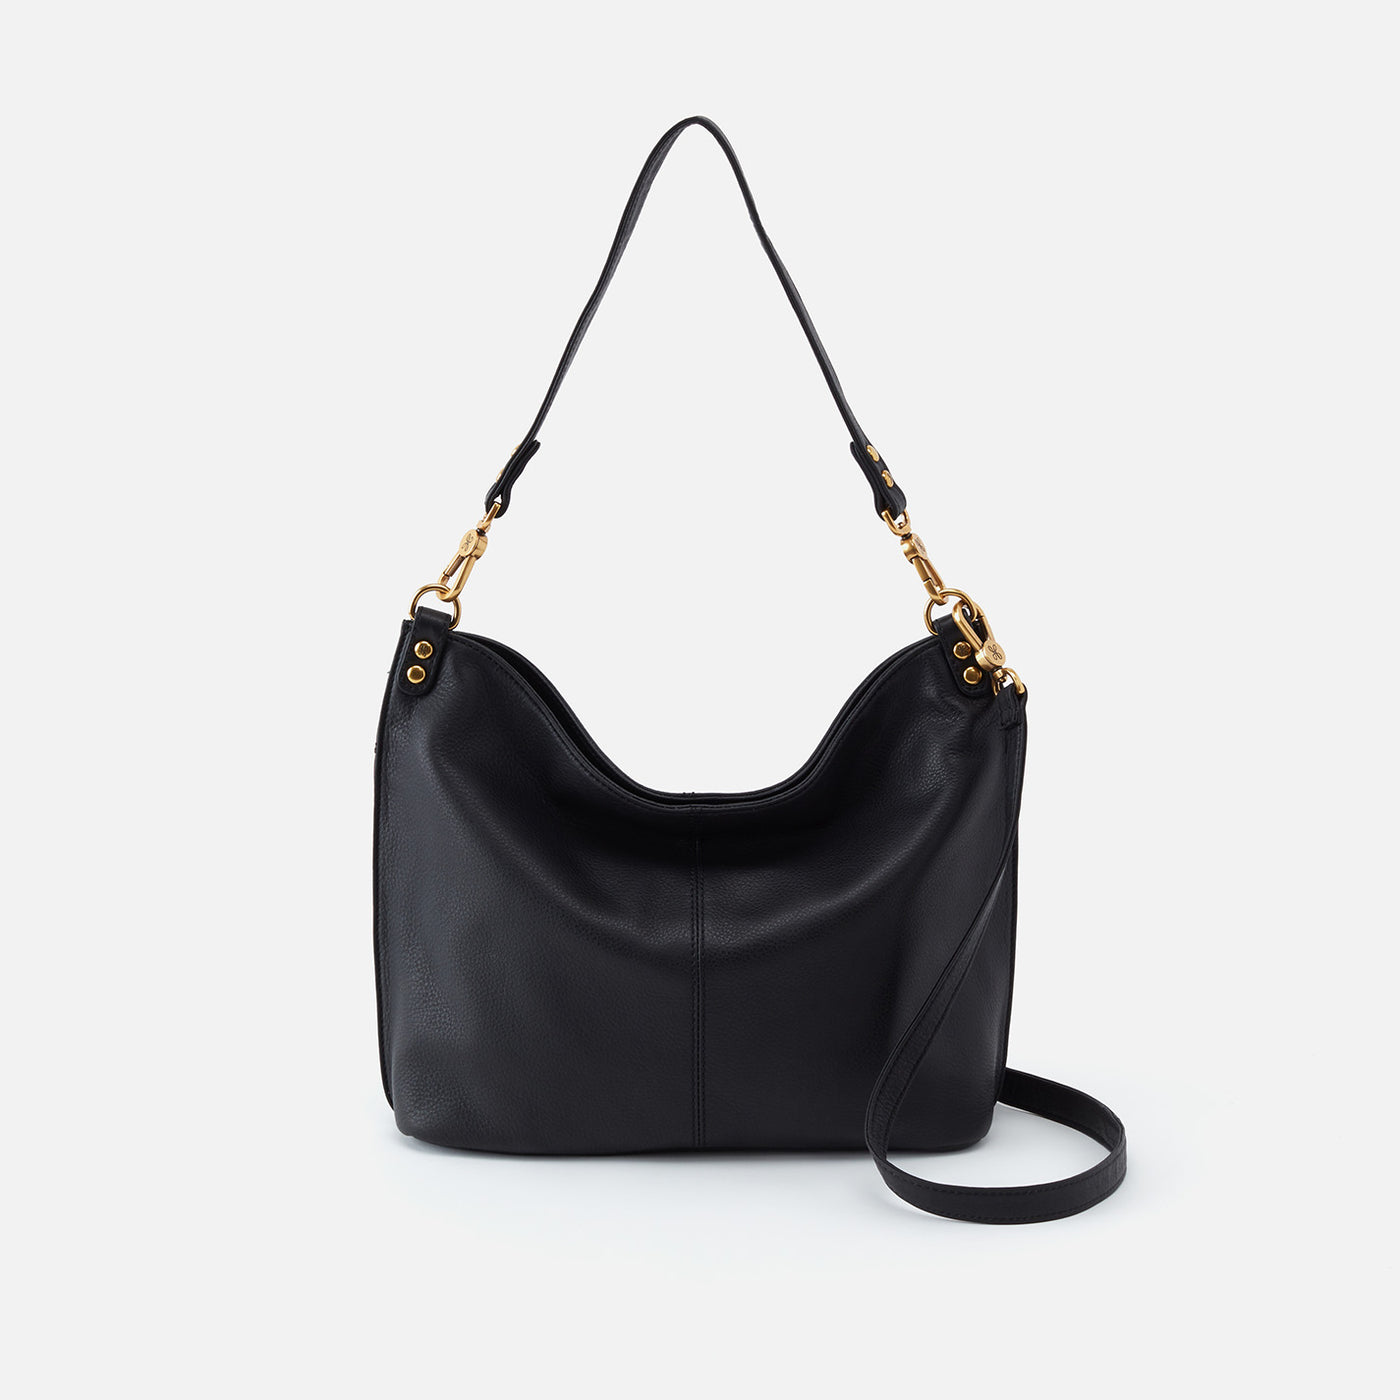 Women's Black Leather Hobo Bag